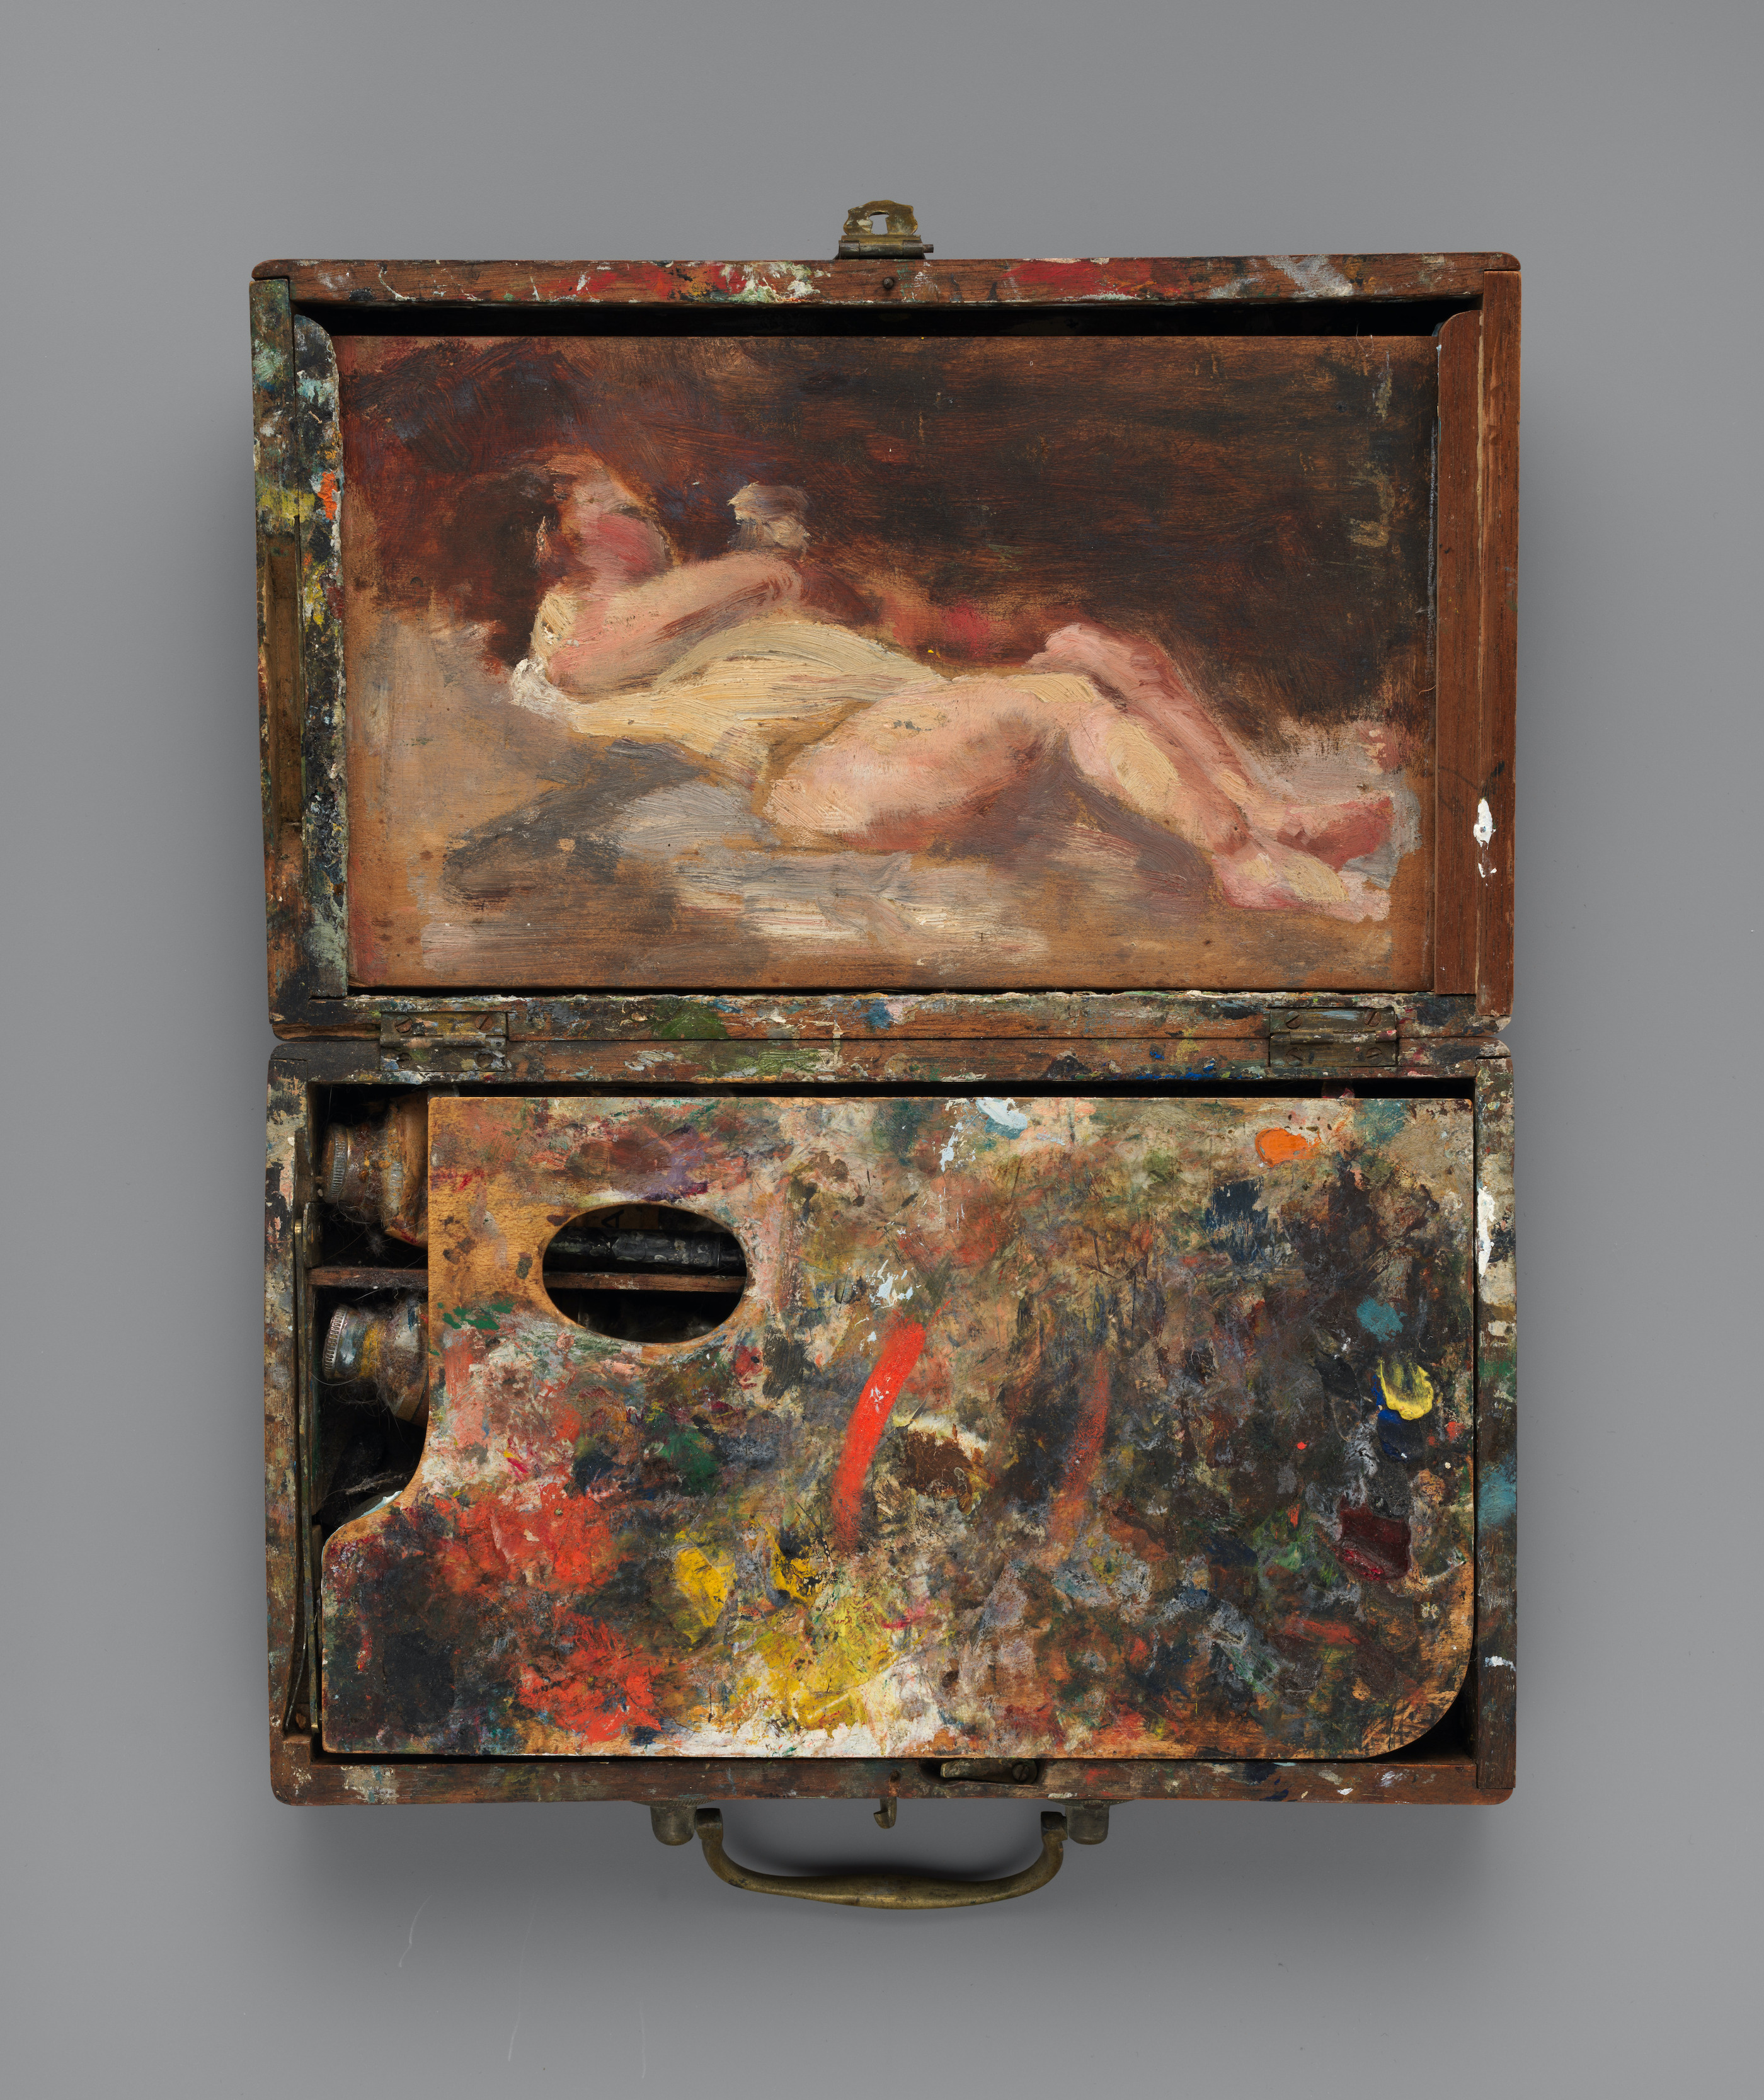 繪有裸體作品的顏料盒 by Helena de Kay - 約1871年 - 5.1 × 23.5 × 14 cm 